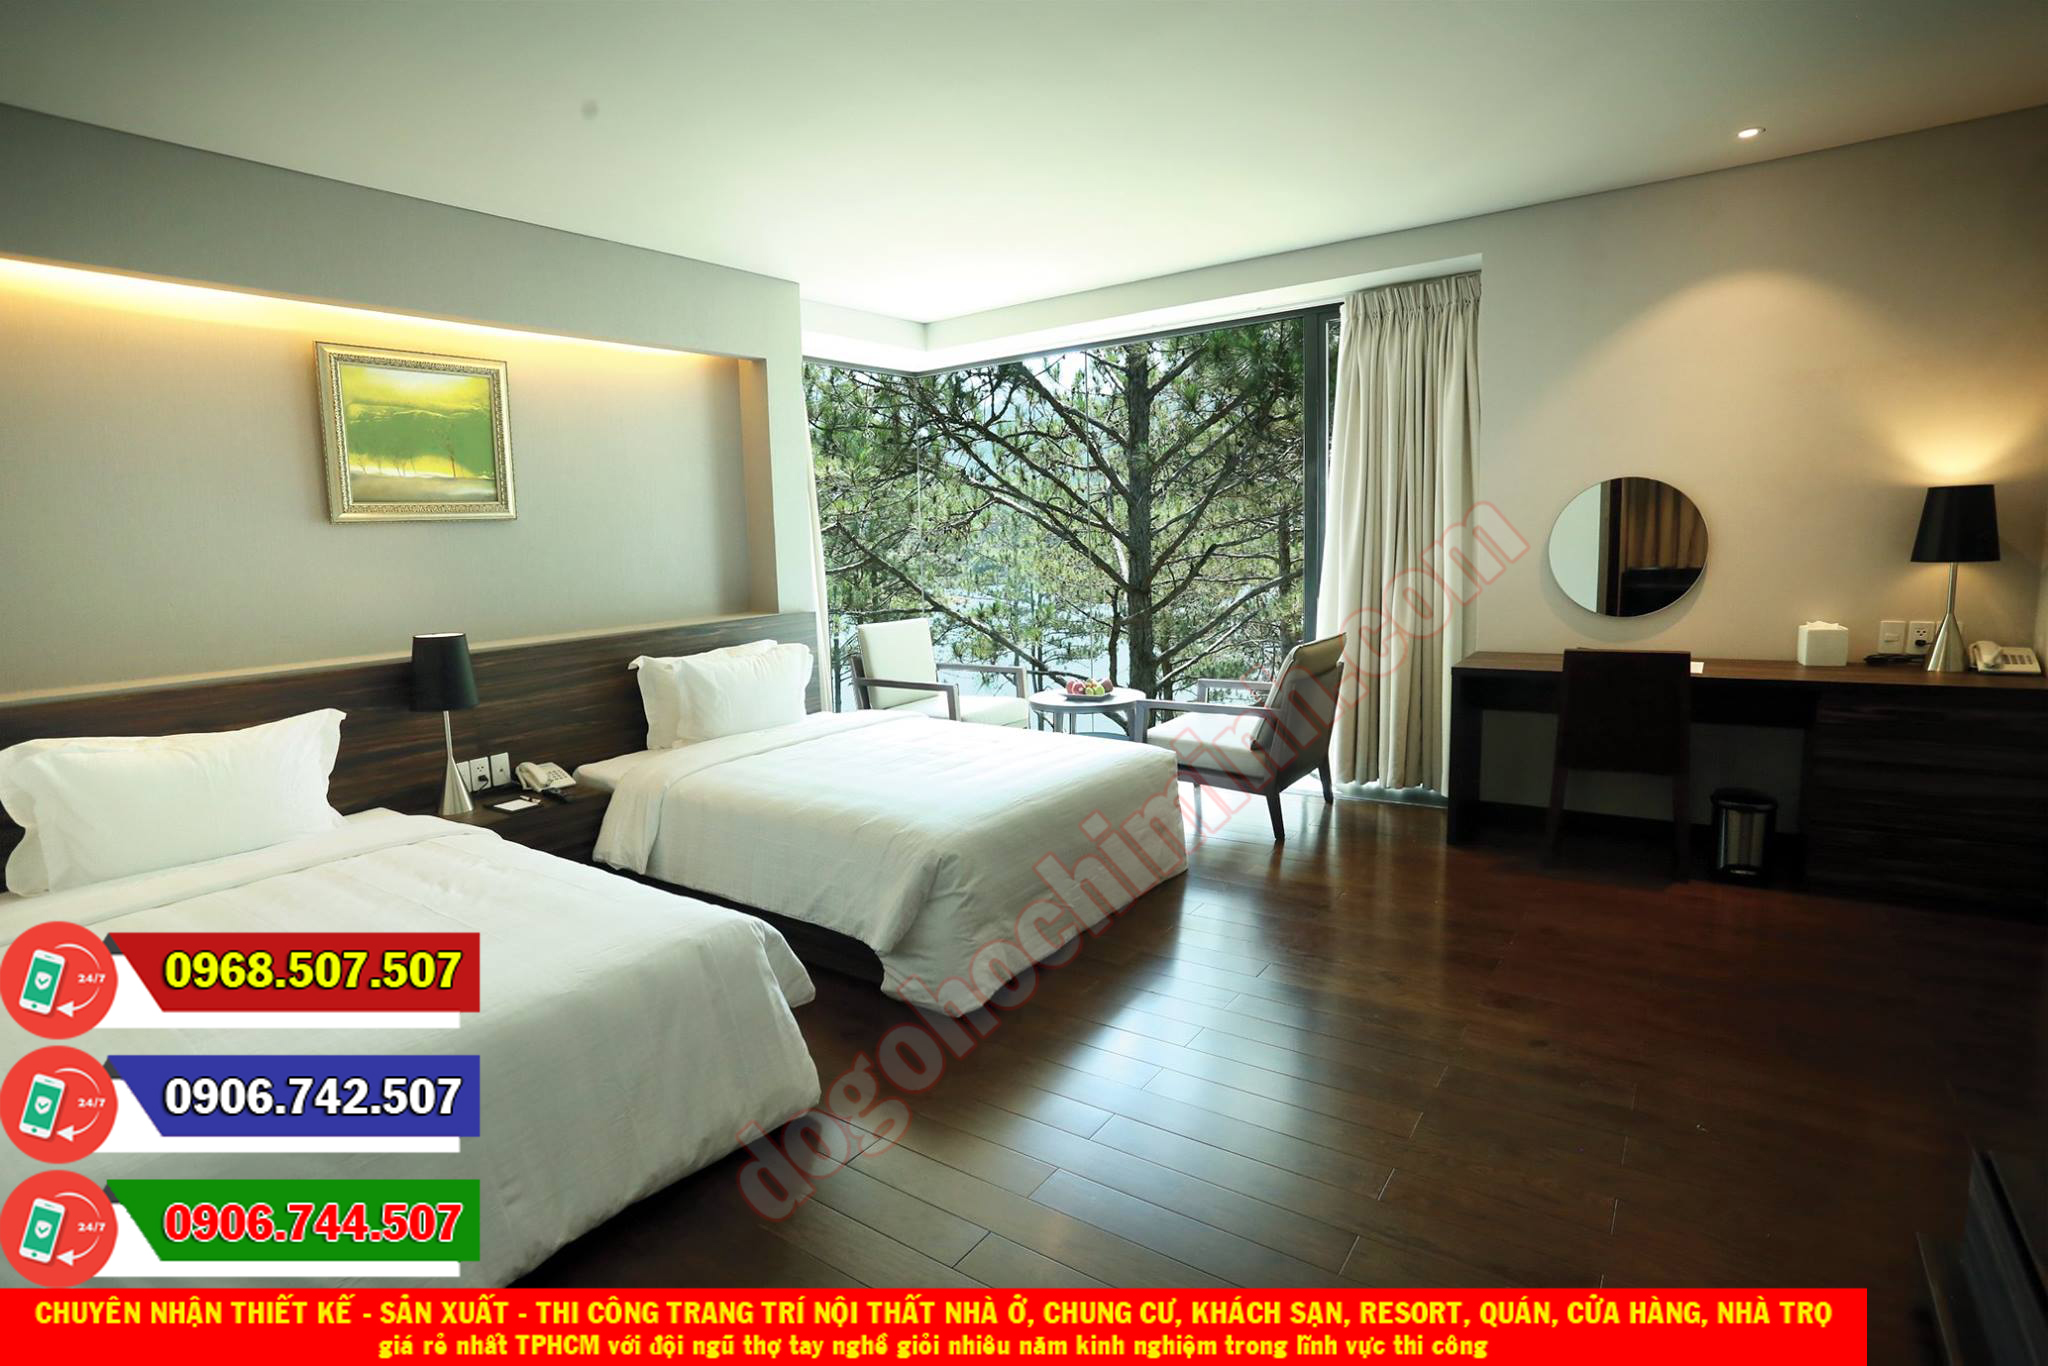 Thi công đồ gỗ nội thất khách sạn resort giá rẻ nhất Phú Hữu TPHCM